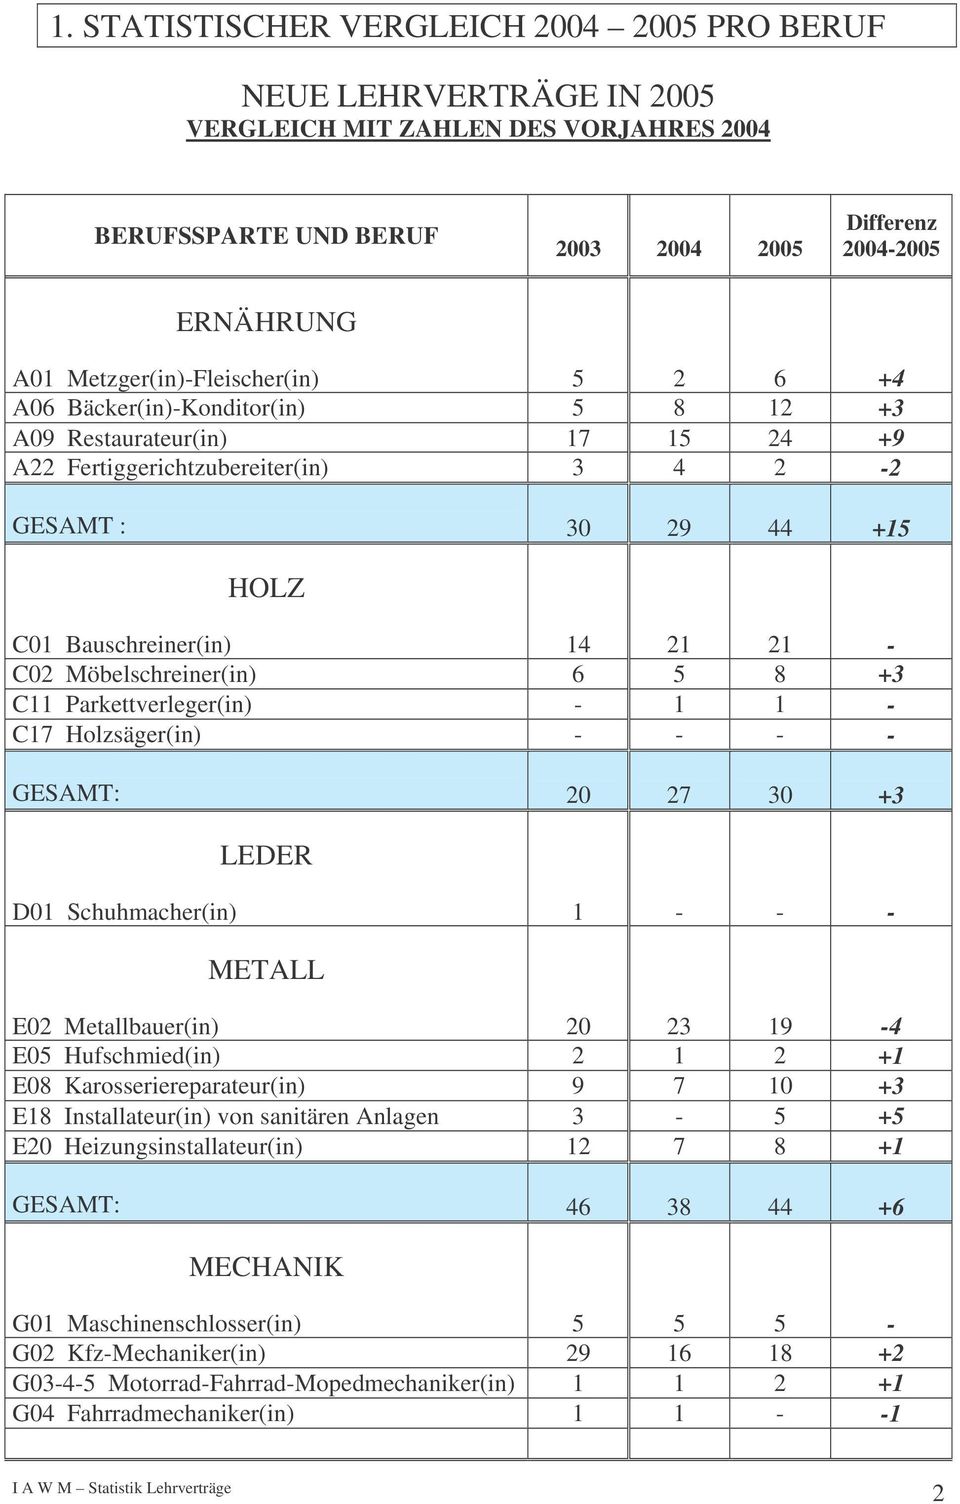 21 - C02 Möbelschreiner(in) 6 5 8 +3 C11 Parkettverleger(in) - 1 1 - C17 Holzsäger(in) - - - - GESAMT: 20 27 30 +3 LEDER D01 Schuhmacher(in) 1 - - - METALL E02 Metallbauer(in) 20 23 19-4 E05